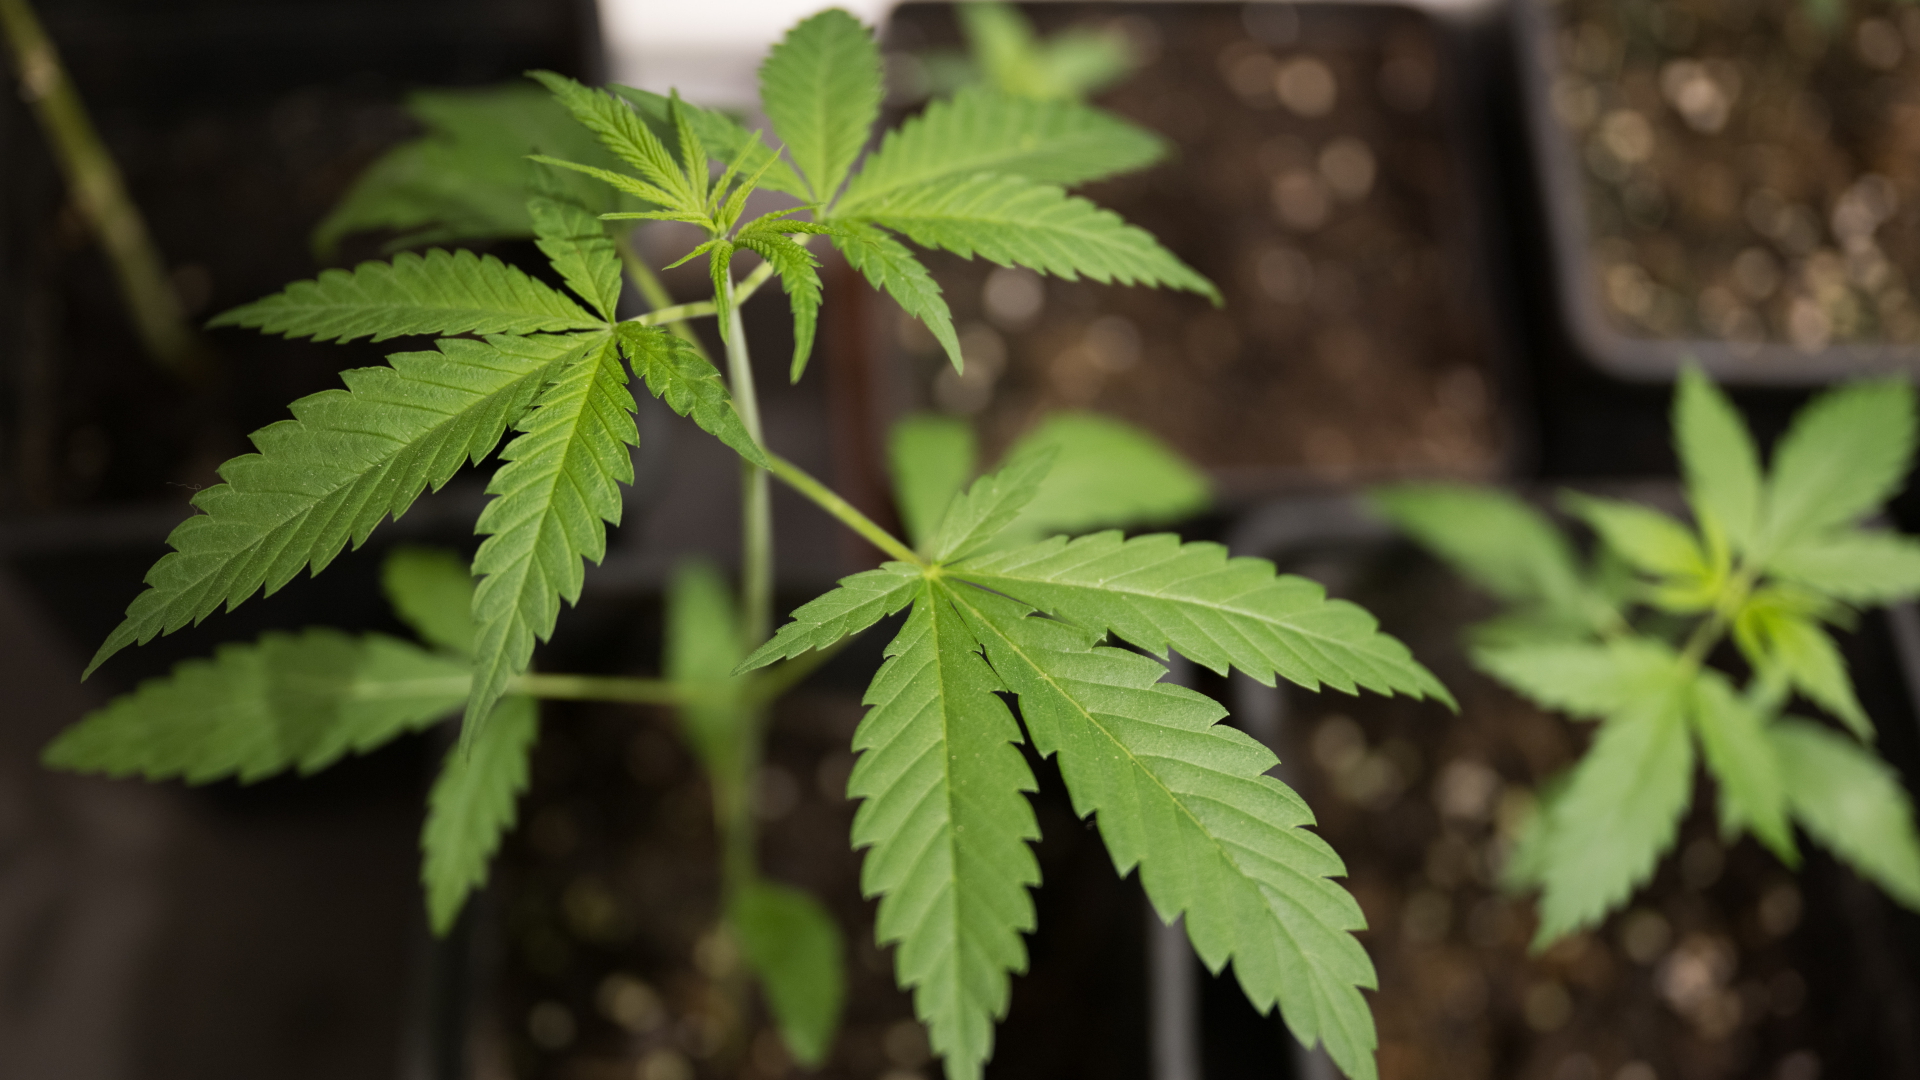 Cannabispflanzen (Mutterpflanzen) der Sorte GSC (Girl Scout Cookies) stehen in einem Aufzuchtszelt unter künstlicher Beleuchtung in einem Privatraum.